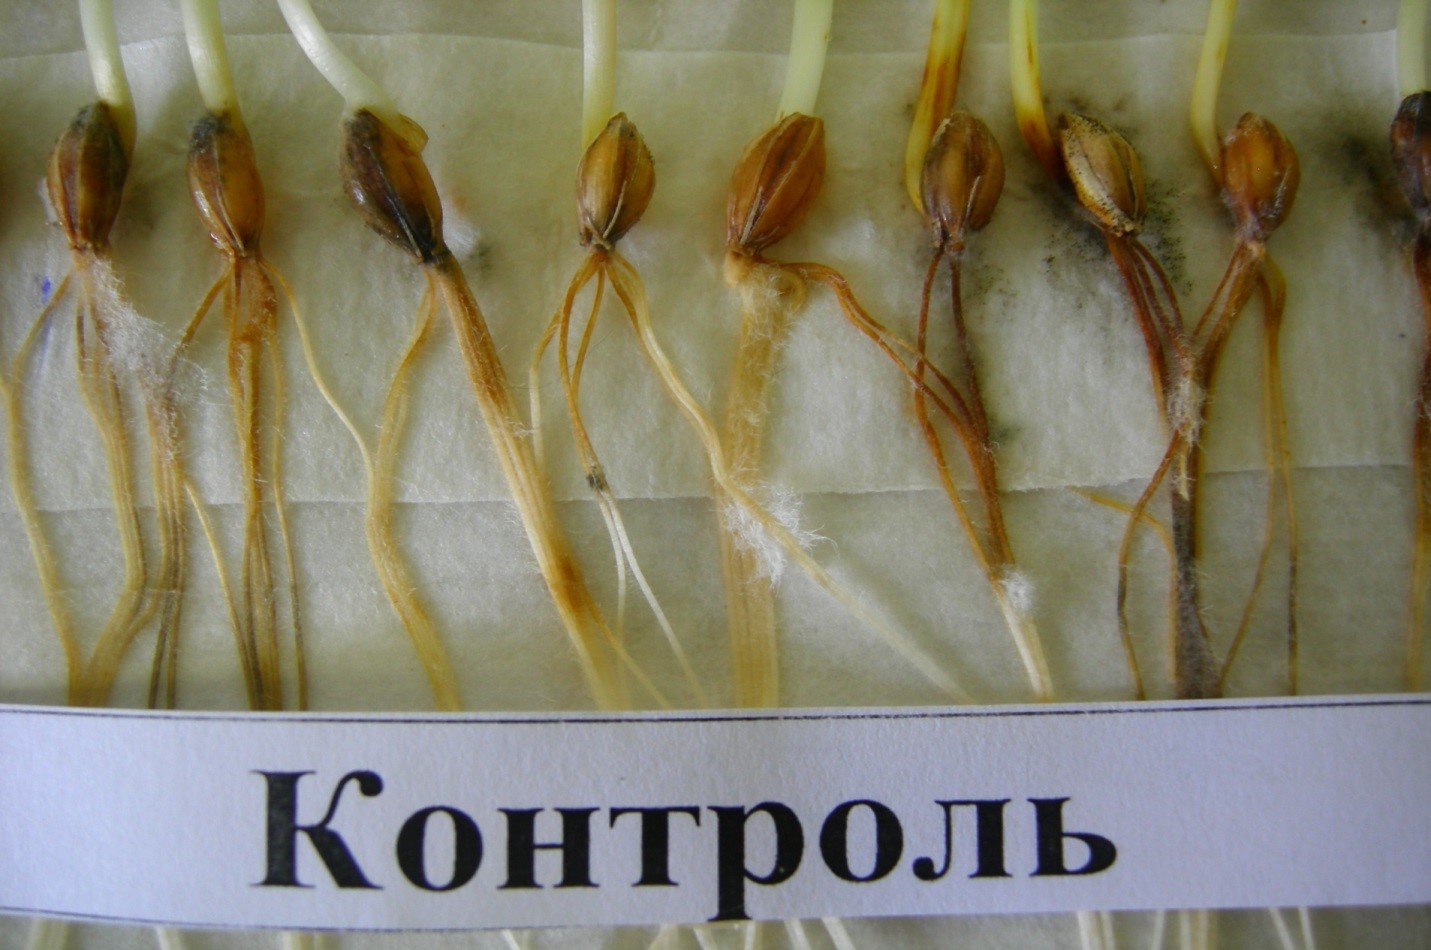 Фитоэкспертиза семян зерновых культур  - залог здорового урожая.